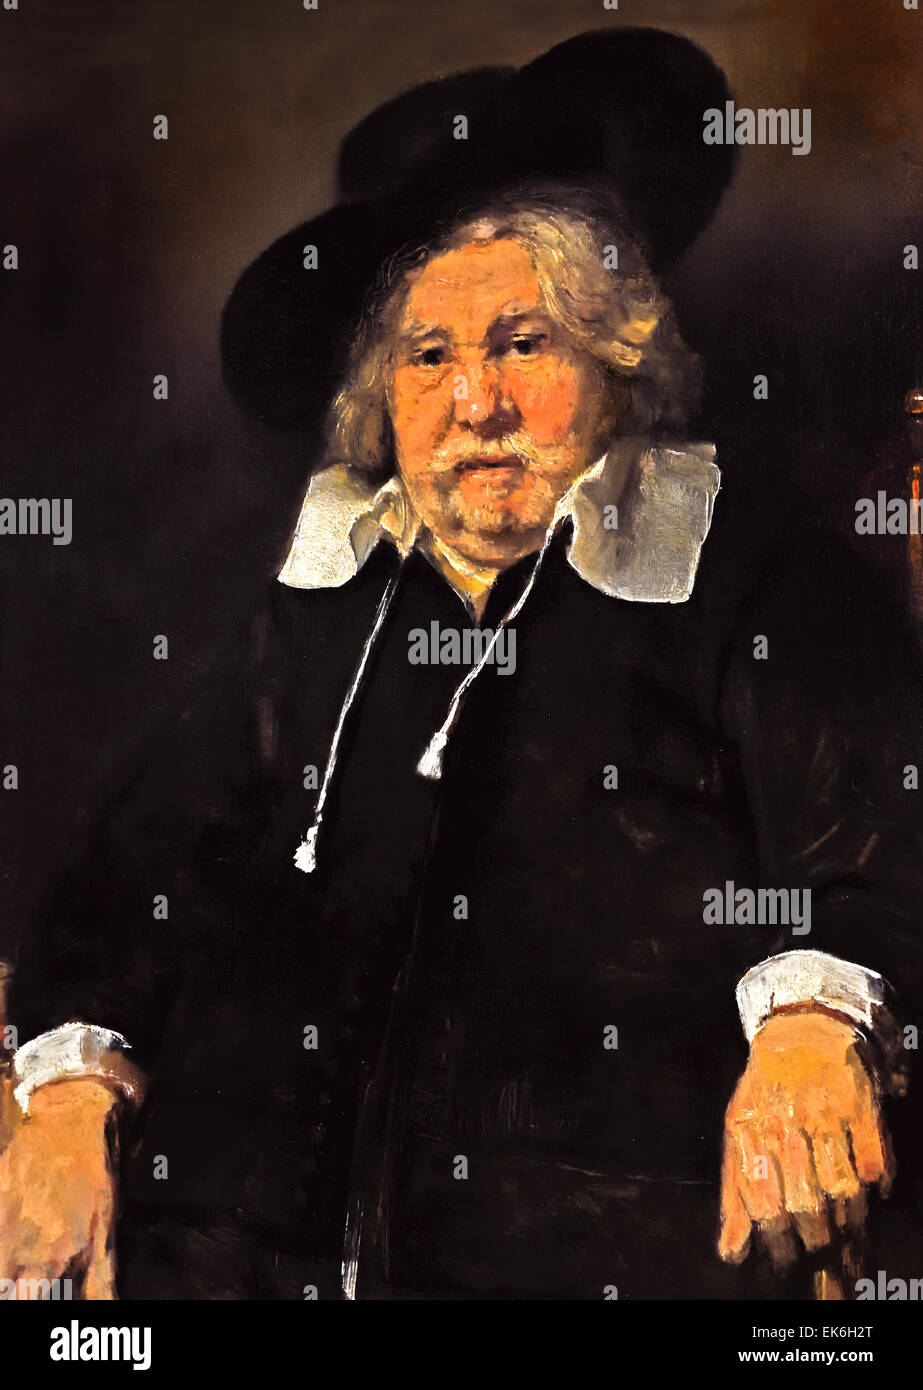 Porträt der ein älterer Mann sitzt, möglicherweise Pieter De La Tombe 1667 Rembrandt Harmenszoon van Rijn1606 – 1669 Niederlande Niederlande Stockfoto